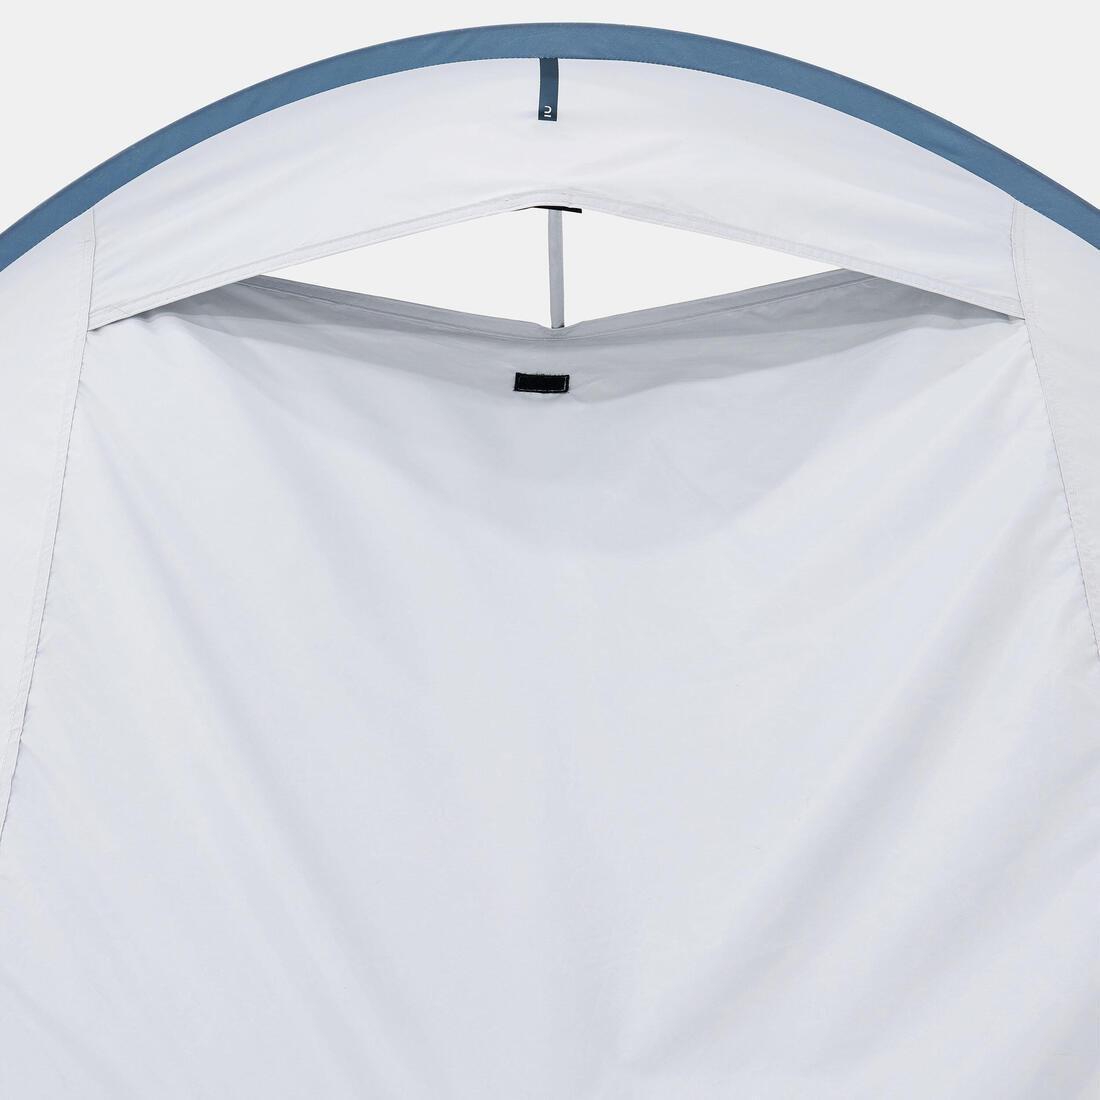 QUECHUA - 2-Person Pop-Up Tent, Blue